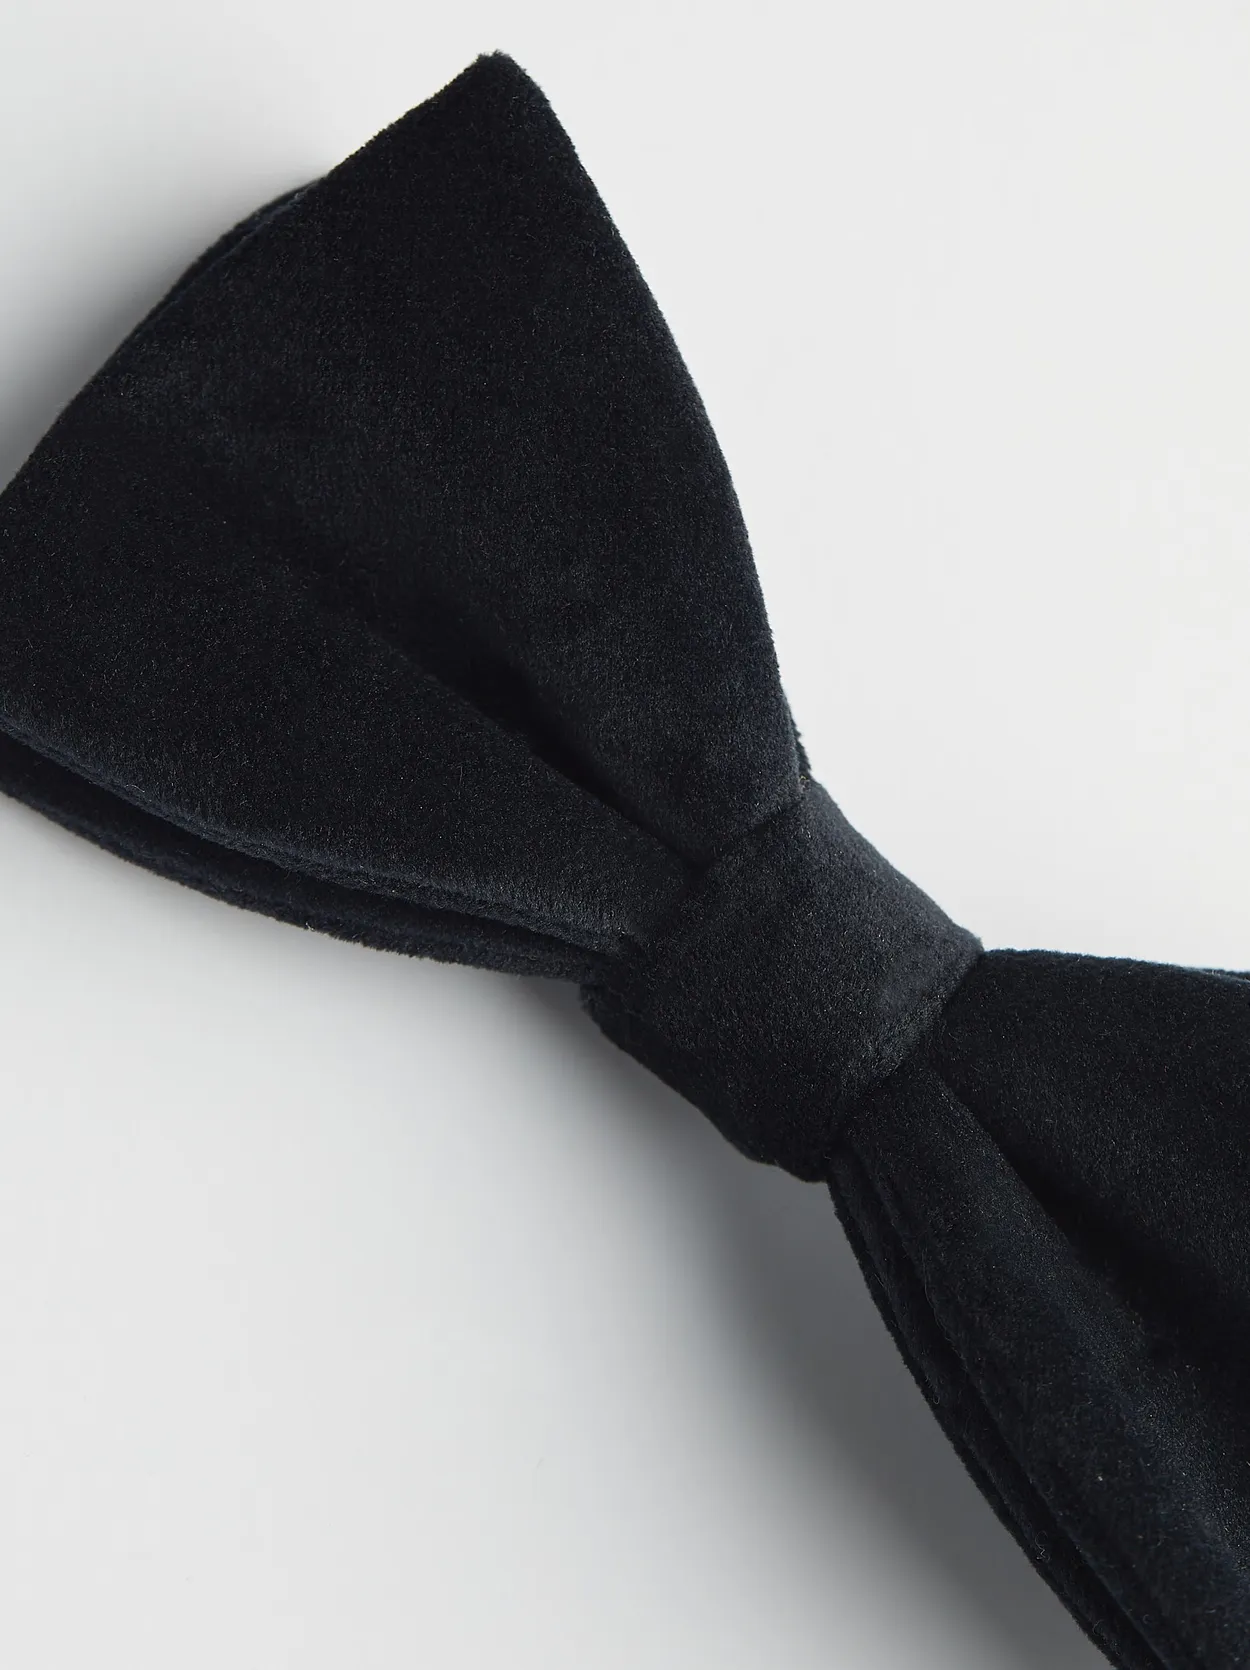 Black Velvet Bow Tie 